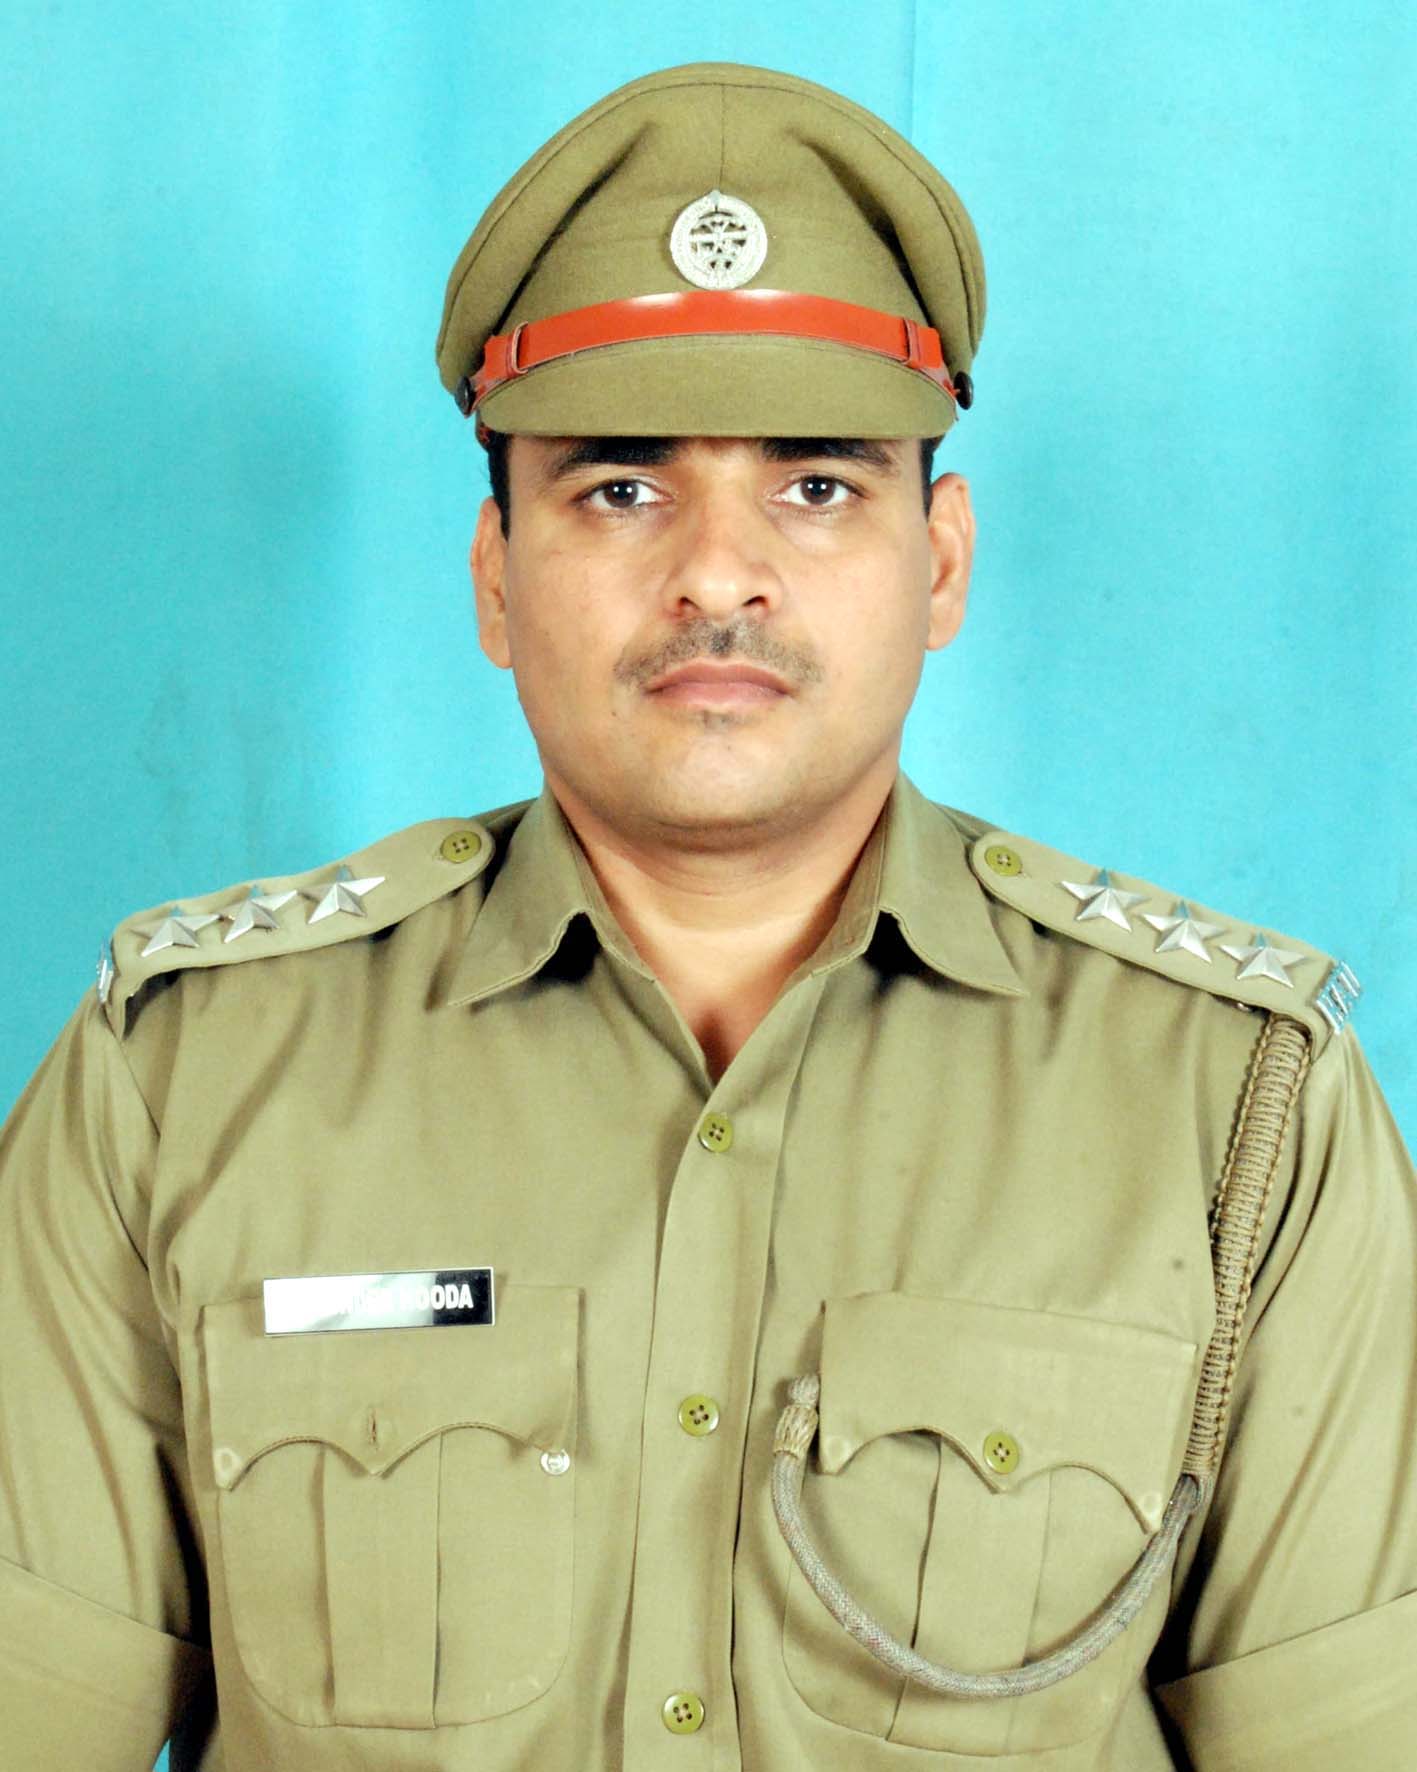 पदक विजेता हकृवि के सुरक्षा अधिकारी योगेंद्र हुड्डा।